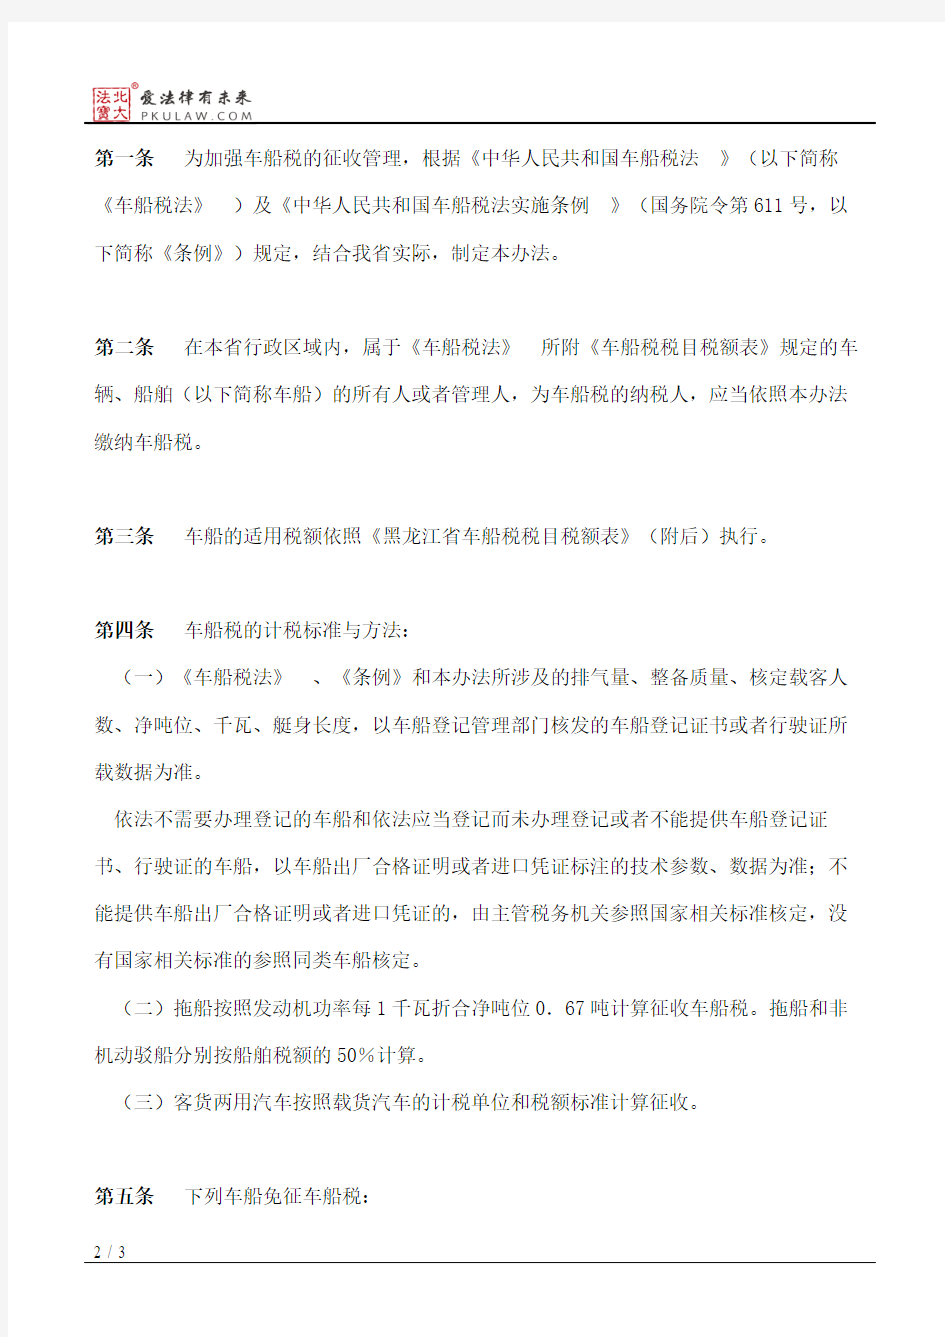 黑龙江省人民政府关于印发黑龙江省车船税实施办法的通知(2011)